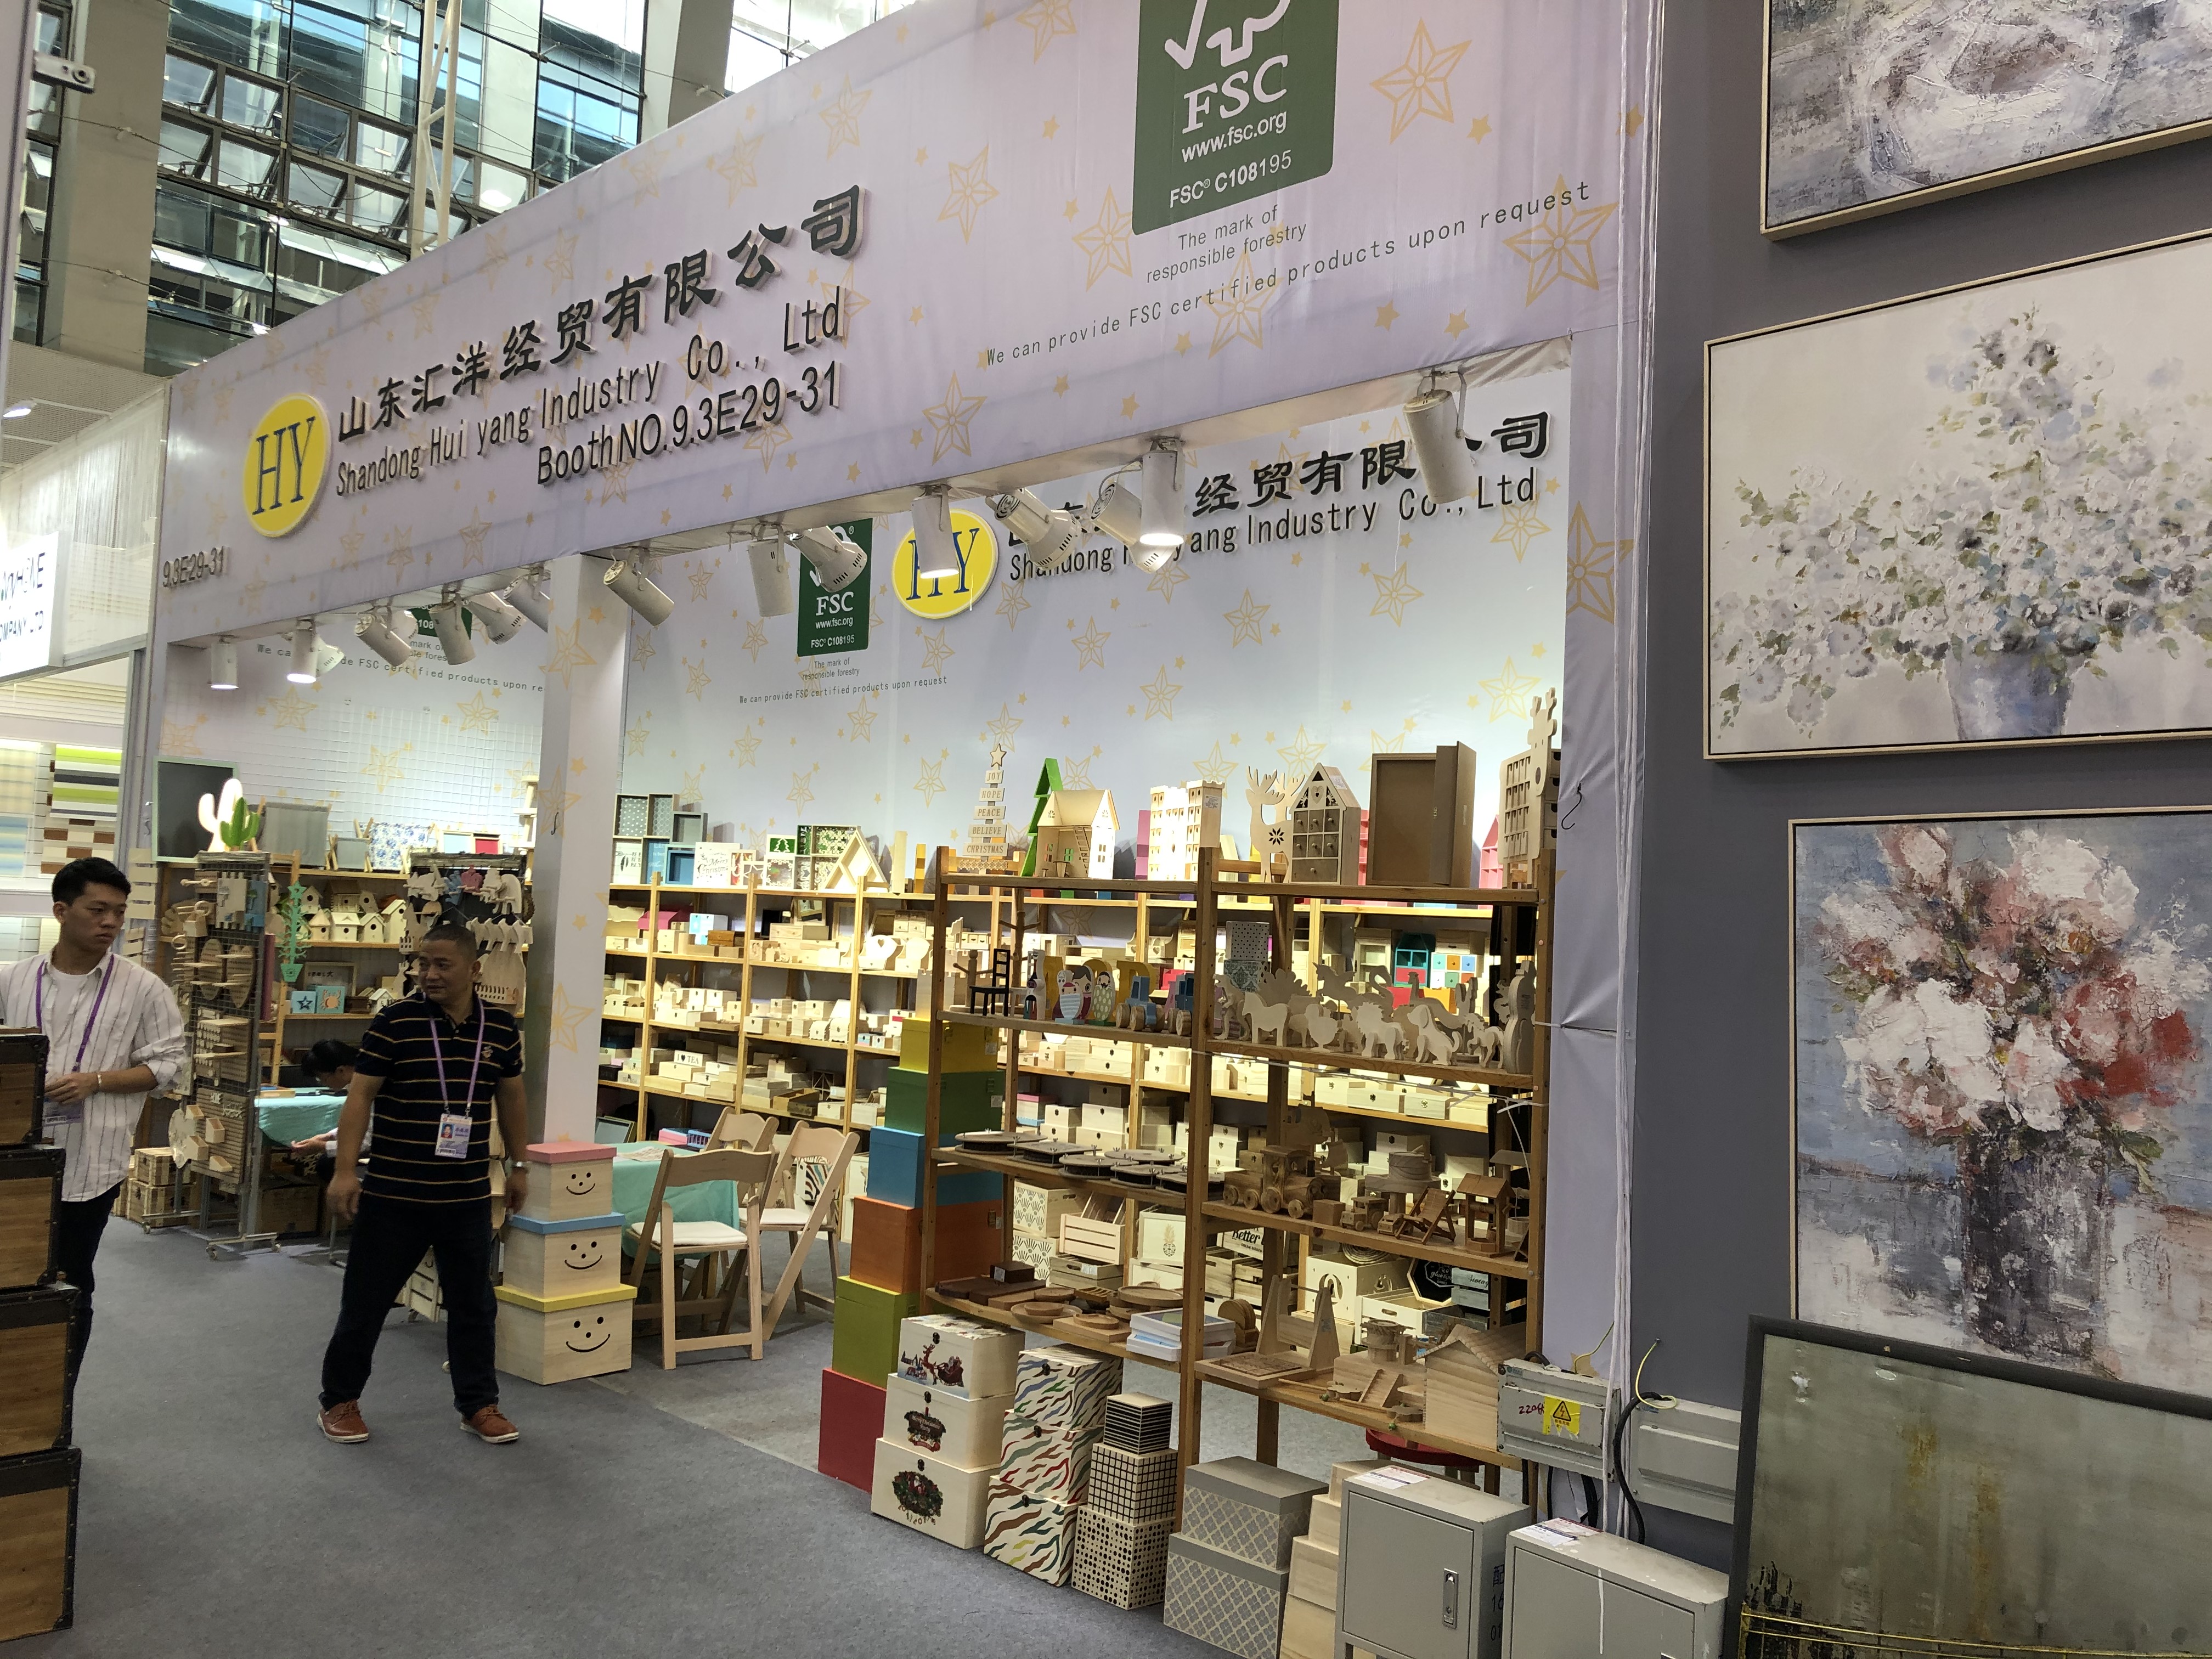 शेडोंग हुआंग लाकडाच्या उत्पादनांसाठी चीनचा विश्वासार्ह पुरवठादार आहे